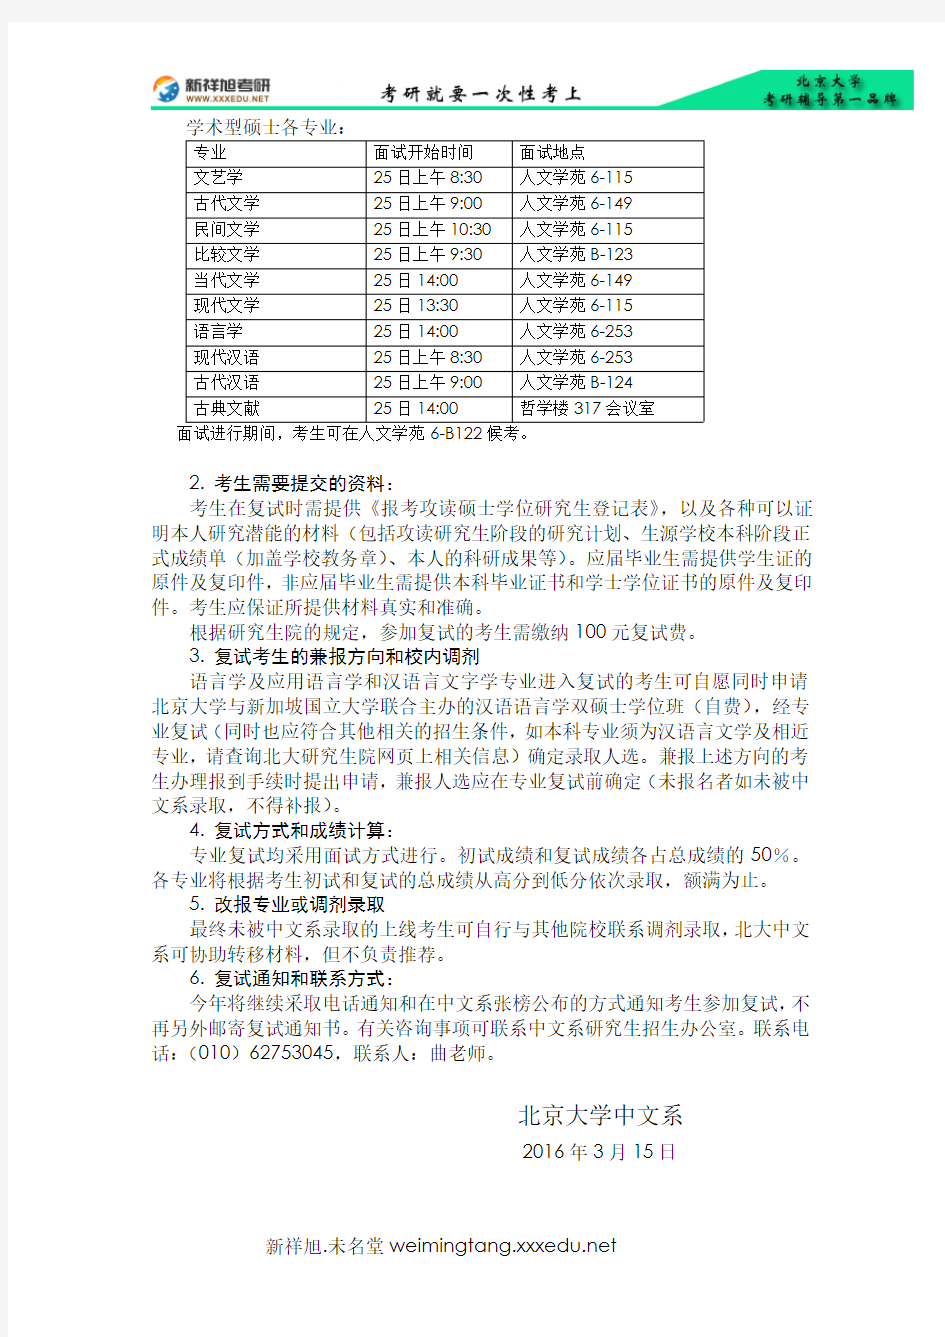 2016年北京大学中文系考研复试名单和有关复试安排的通告